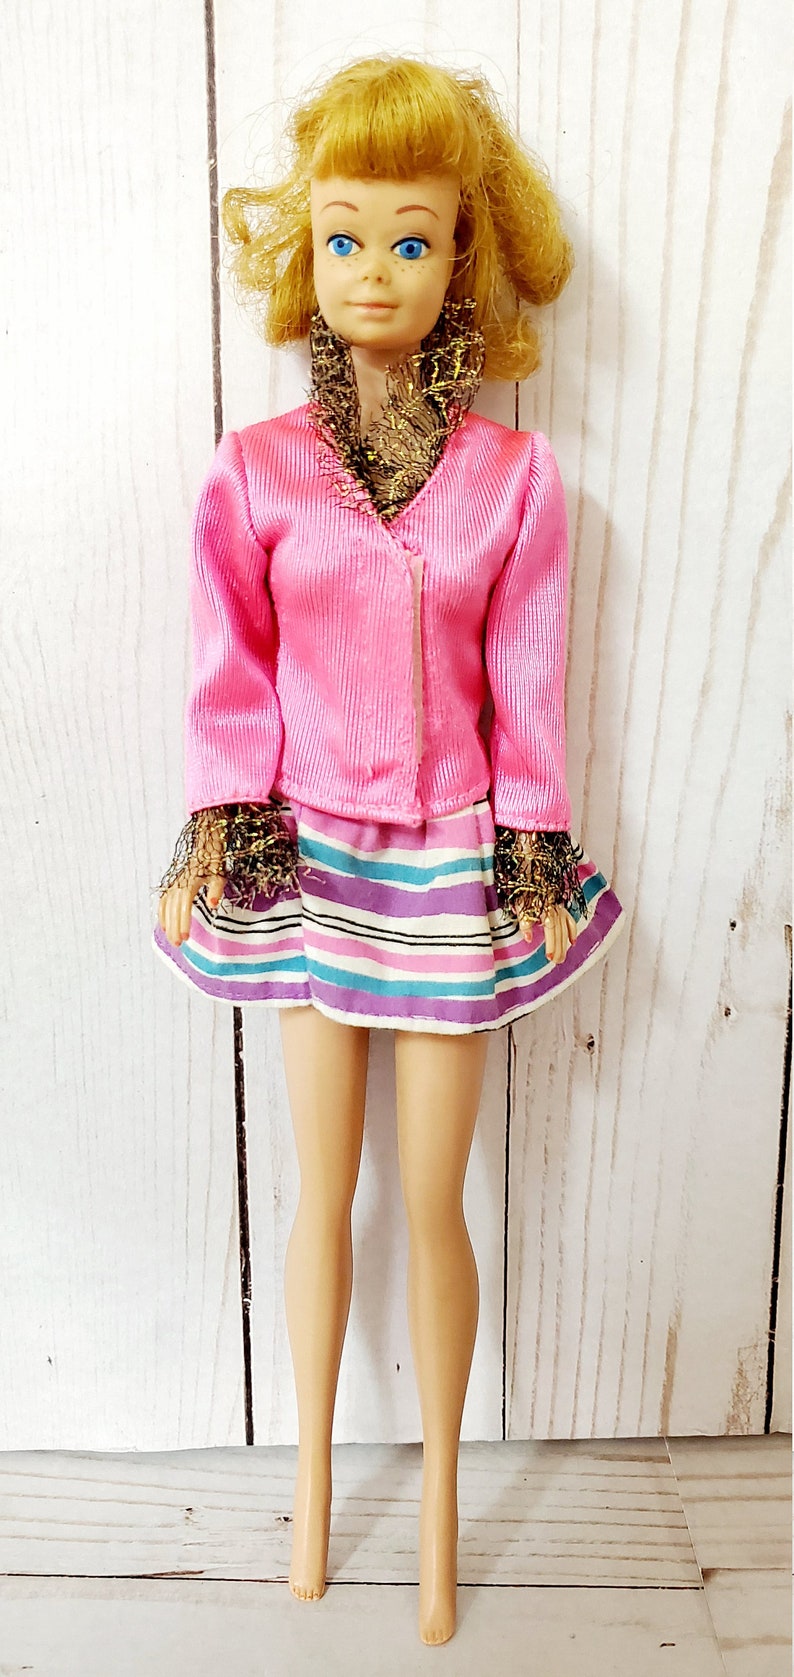 Vintage RARE Original 1958-1962 Freckled Blonde Midge Barbie | Etsy